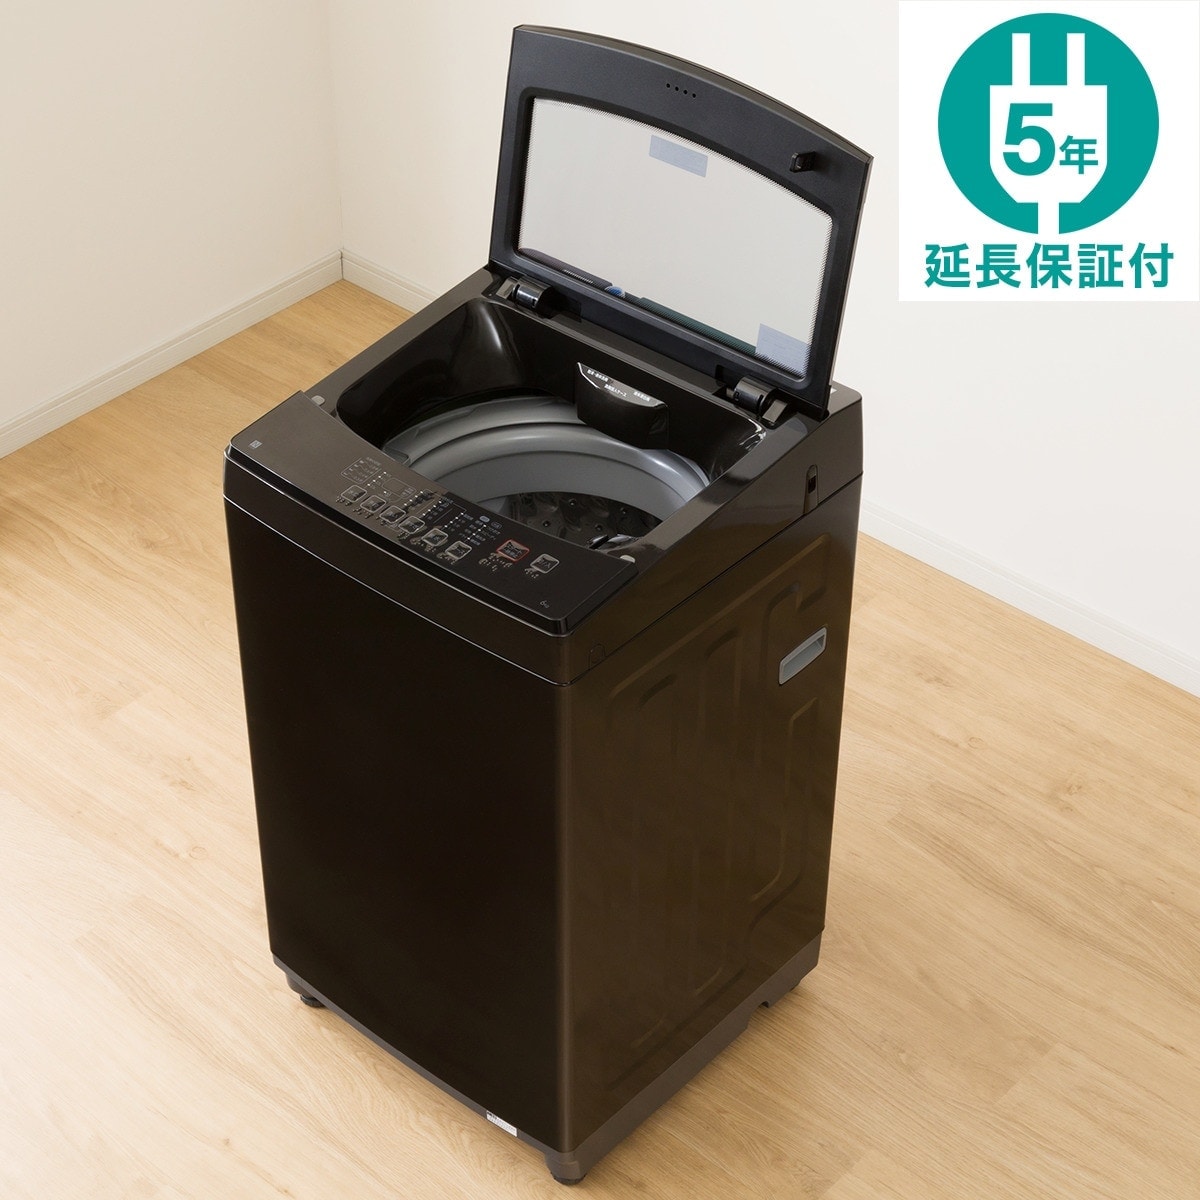 6kg全自動洗濯機(NTR60 ブラック) 延長保証付き